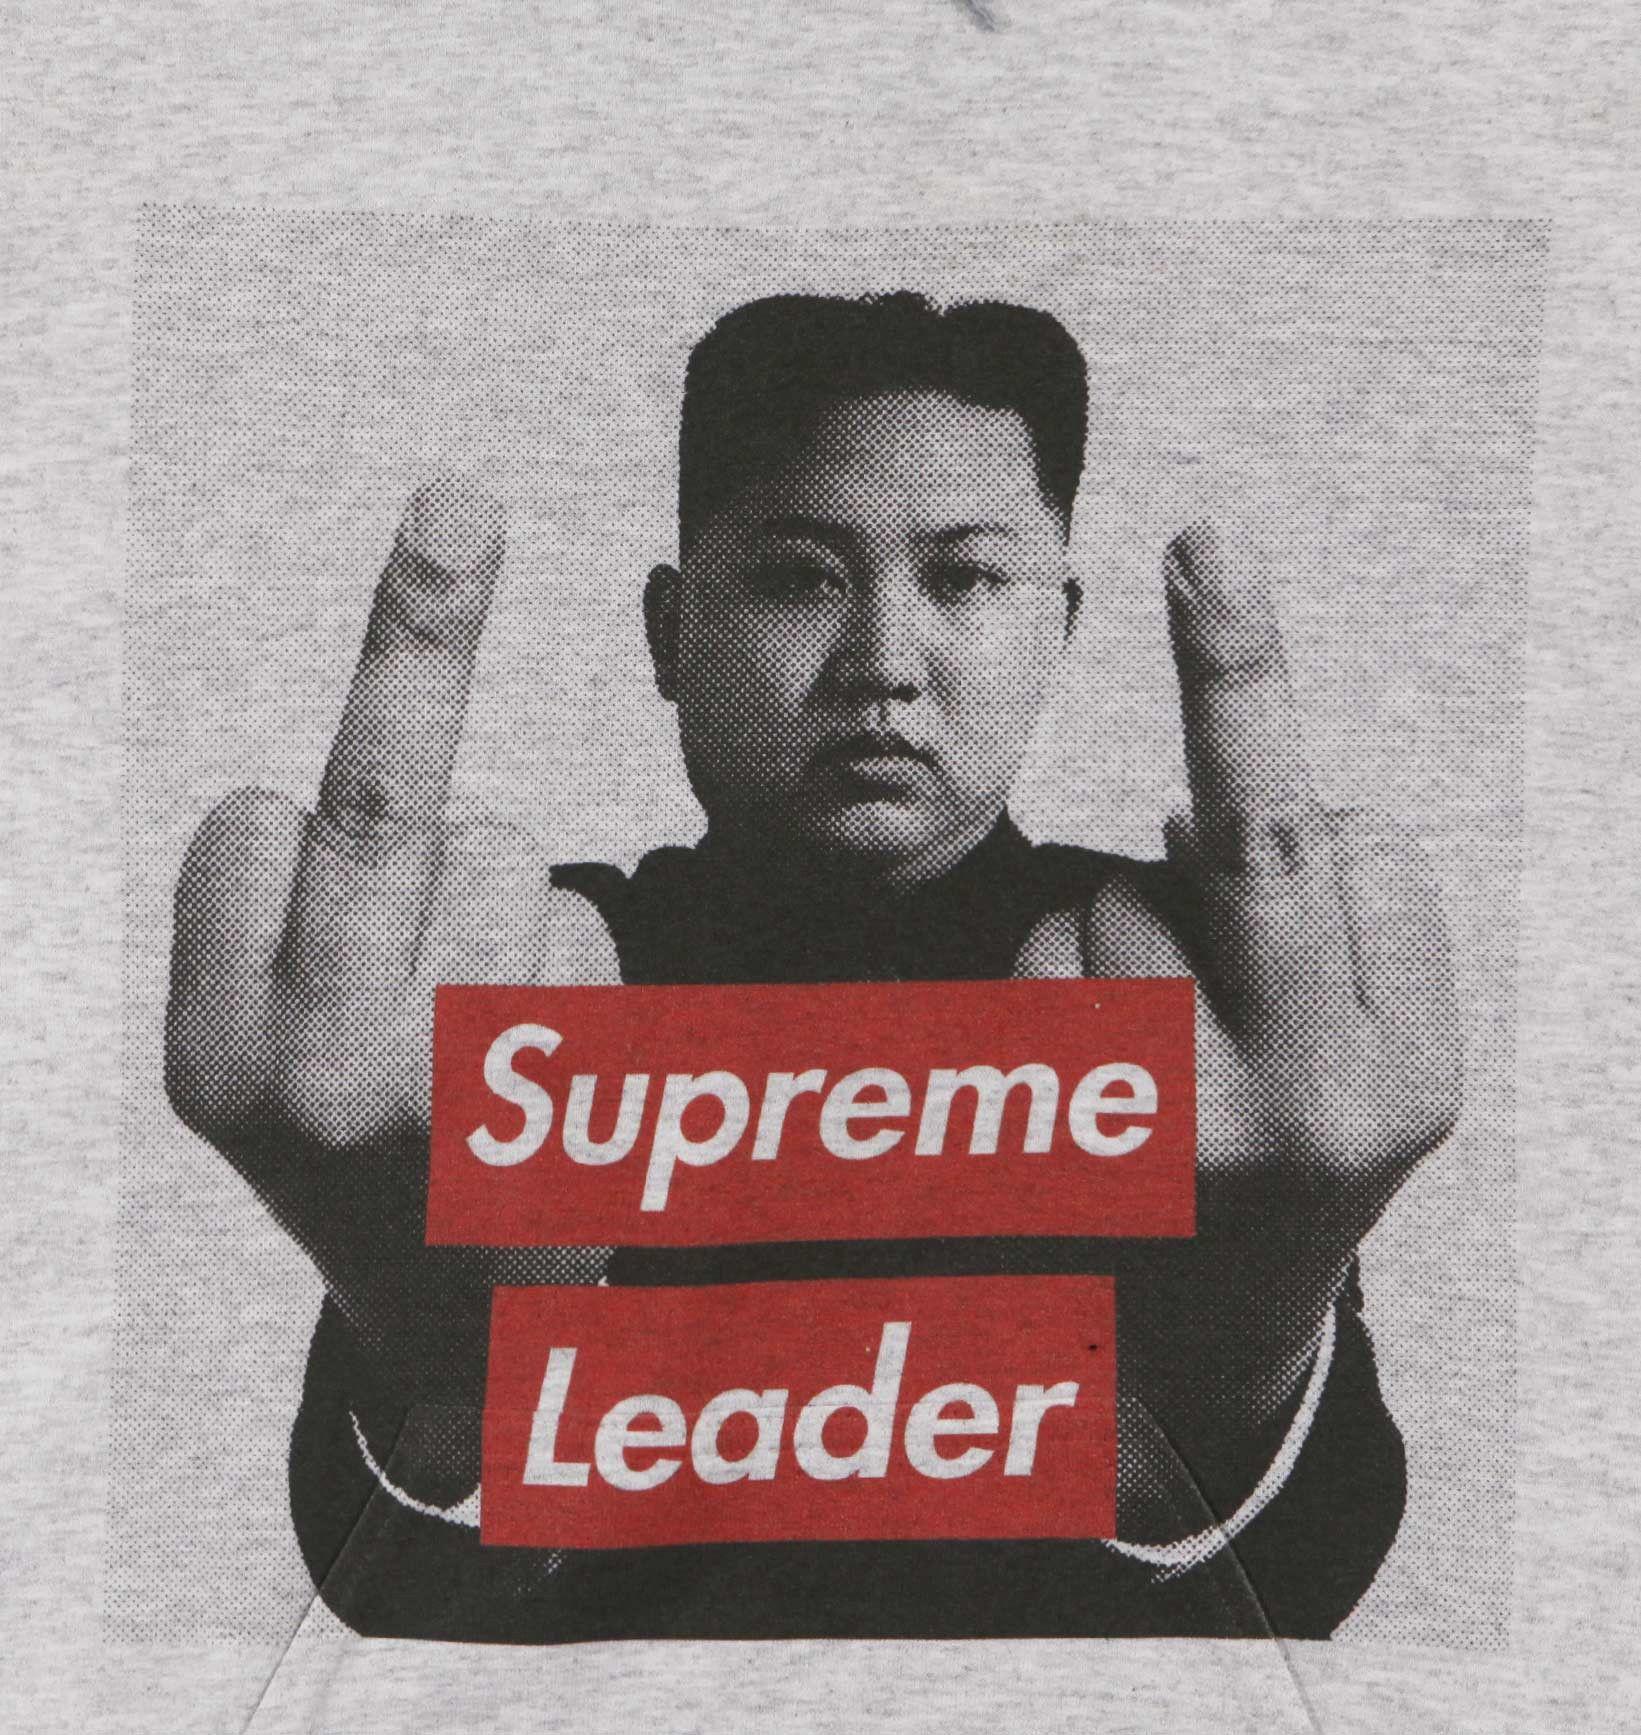 Supreme Leader Logo - Image result for supreme leader | Gang | Pinterest | the Originals ...